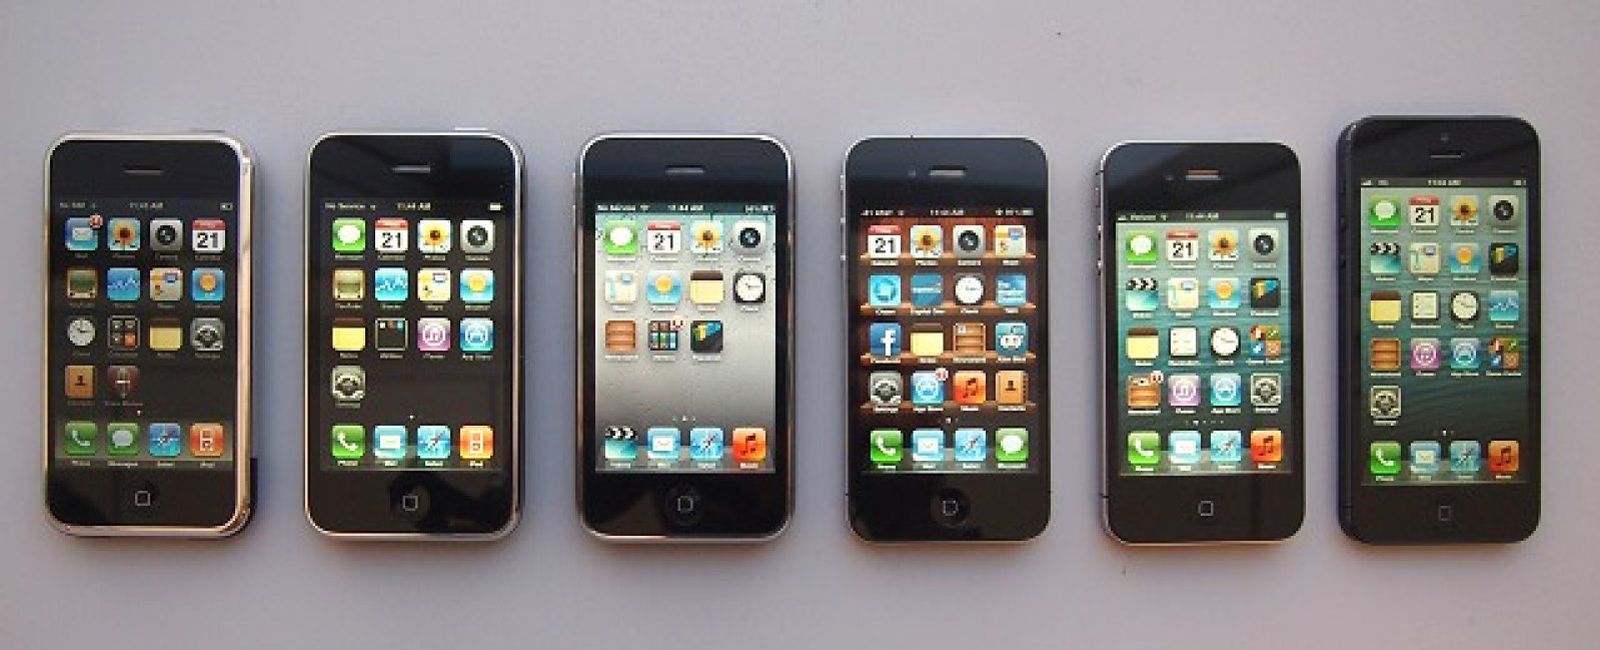 Foto: ¿Está preparando Apple un iPhone 'low cost'?